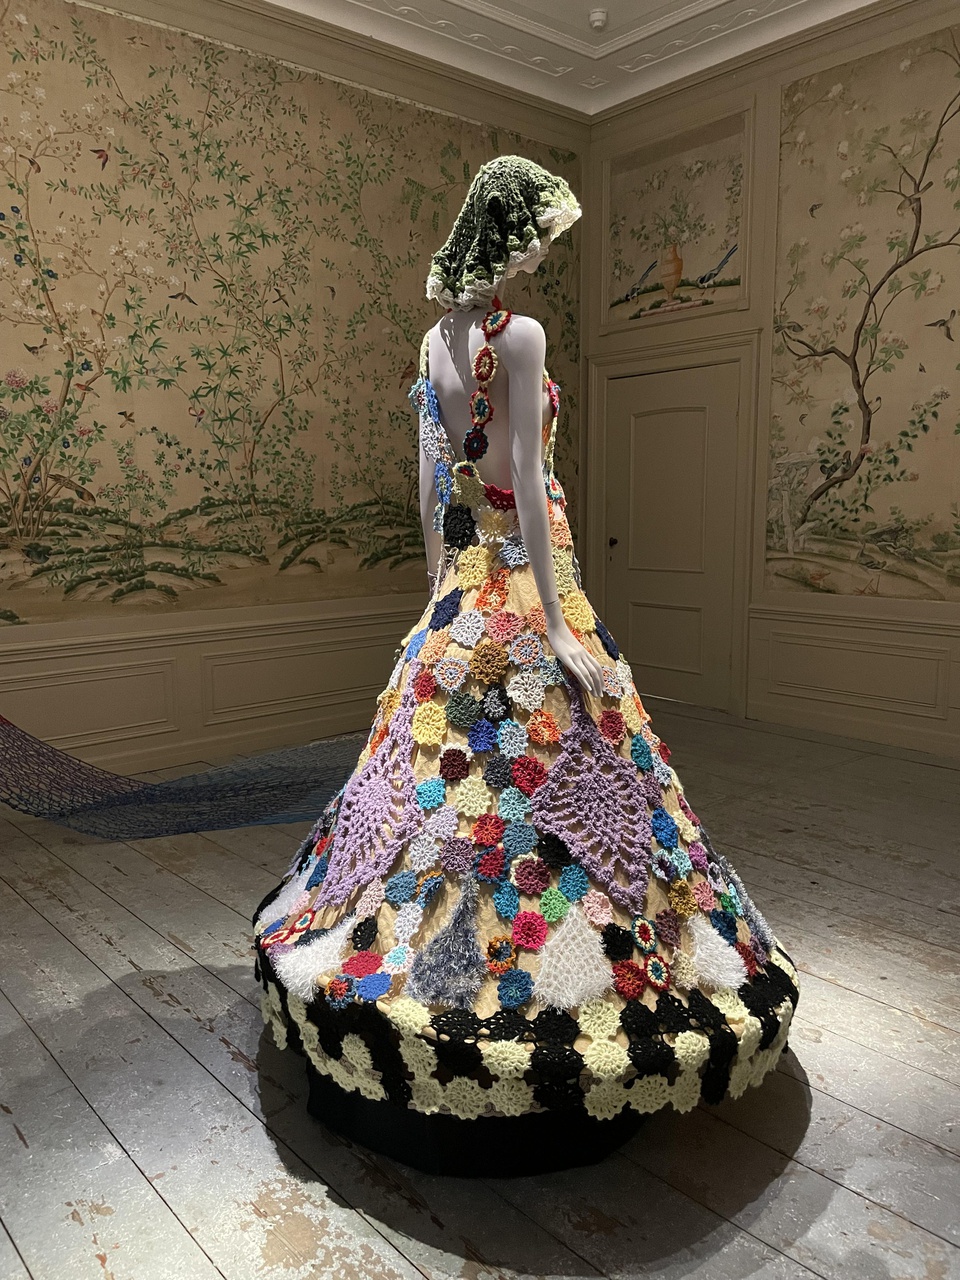 Kamer in Oud-Amelisweerd met jurk uit de expositie HKU Fashion Design in 2021